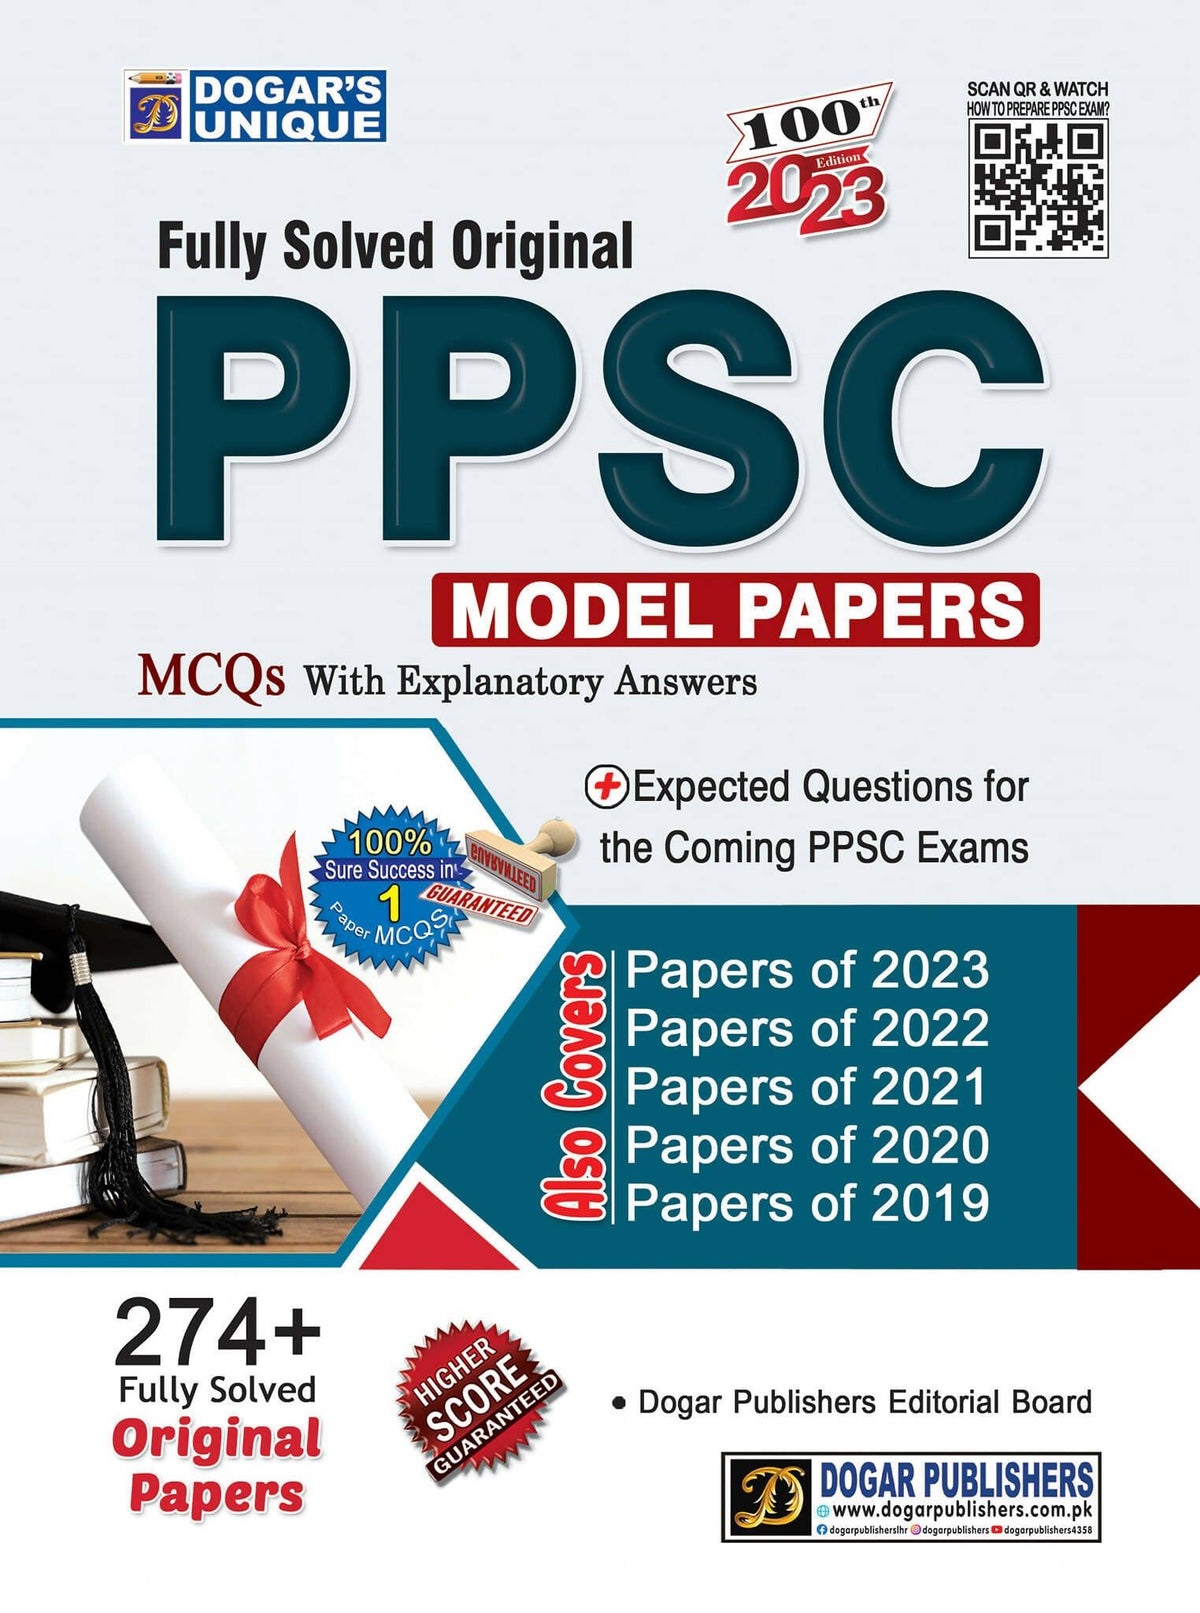 Dogar PPSC Fully Solved Original Model Papers